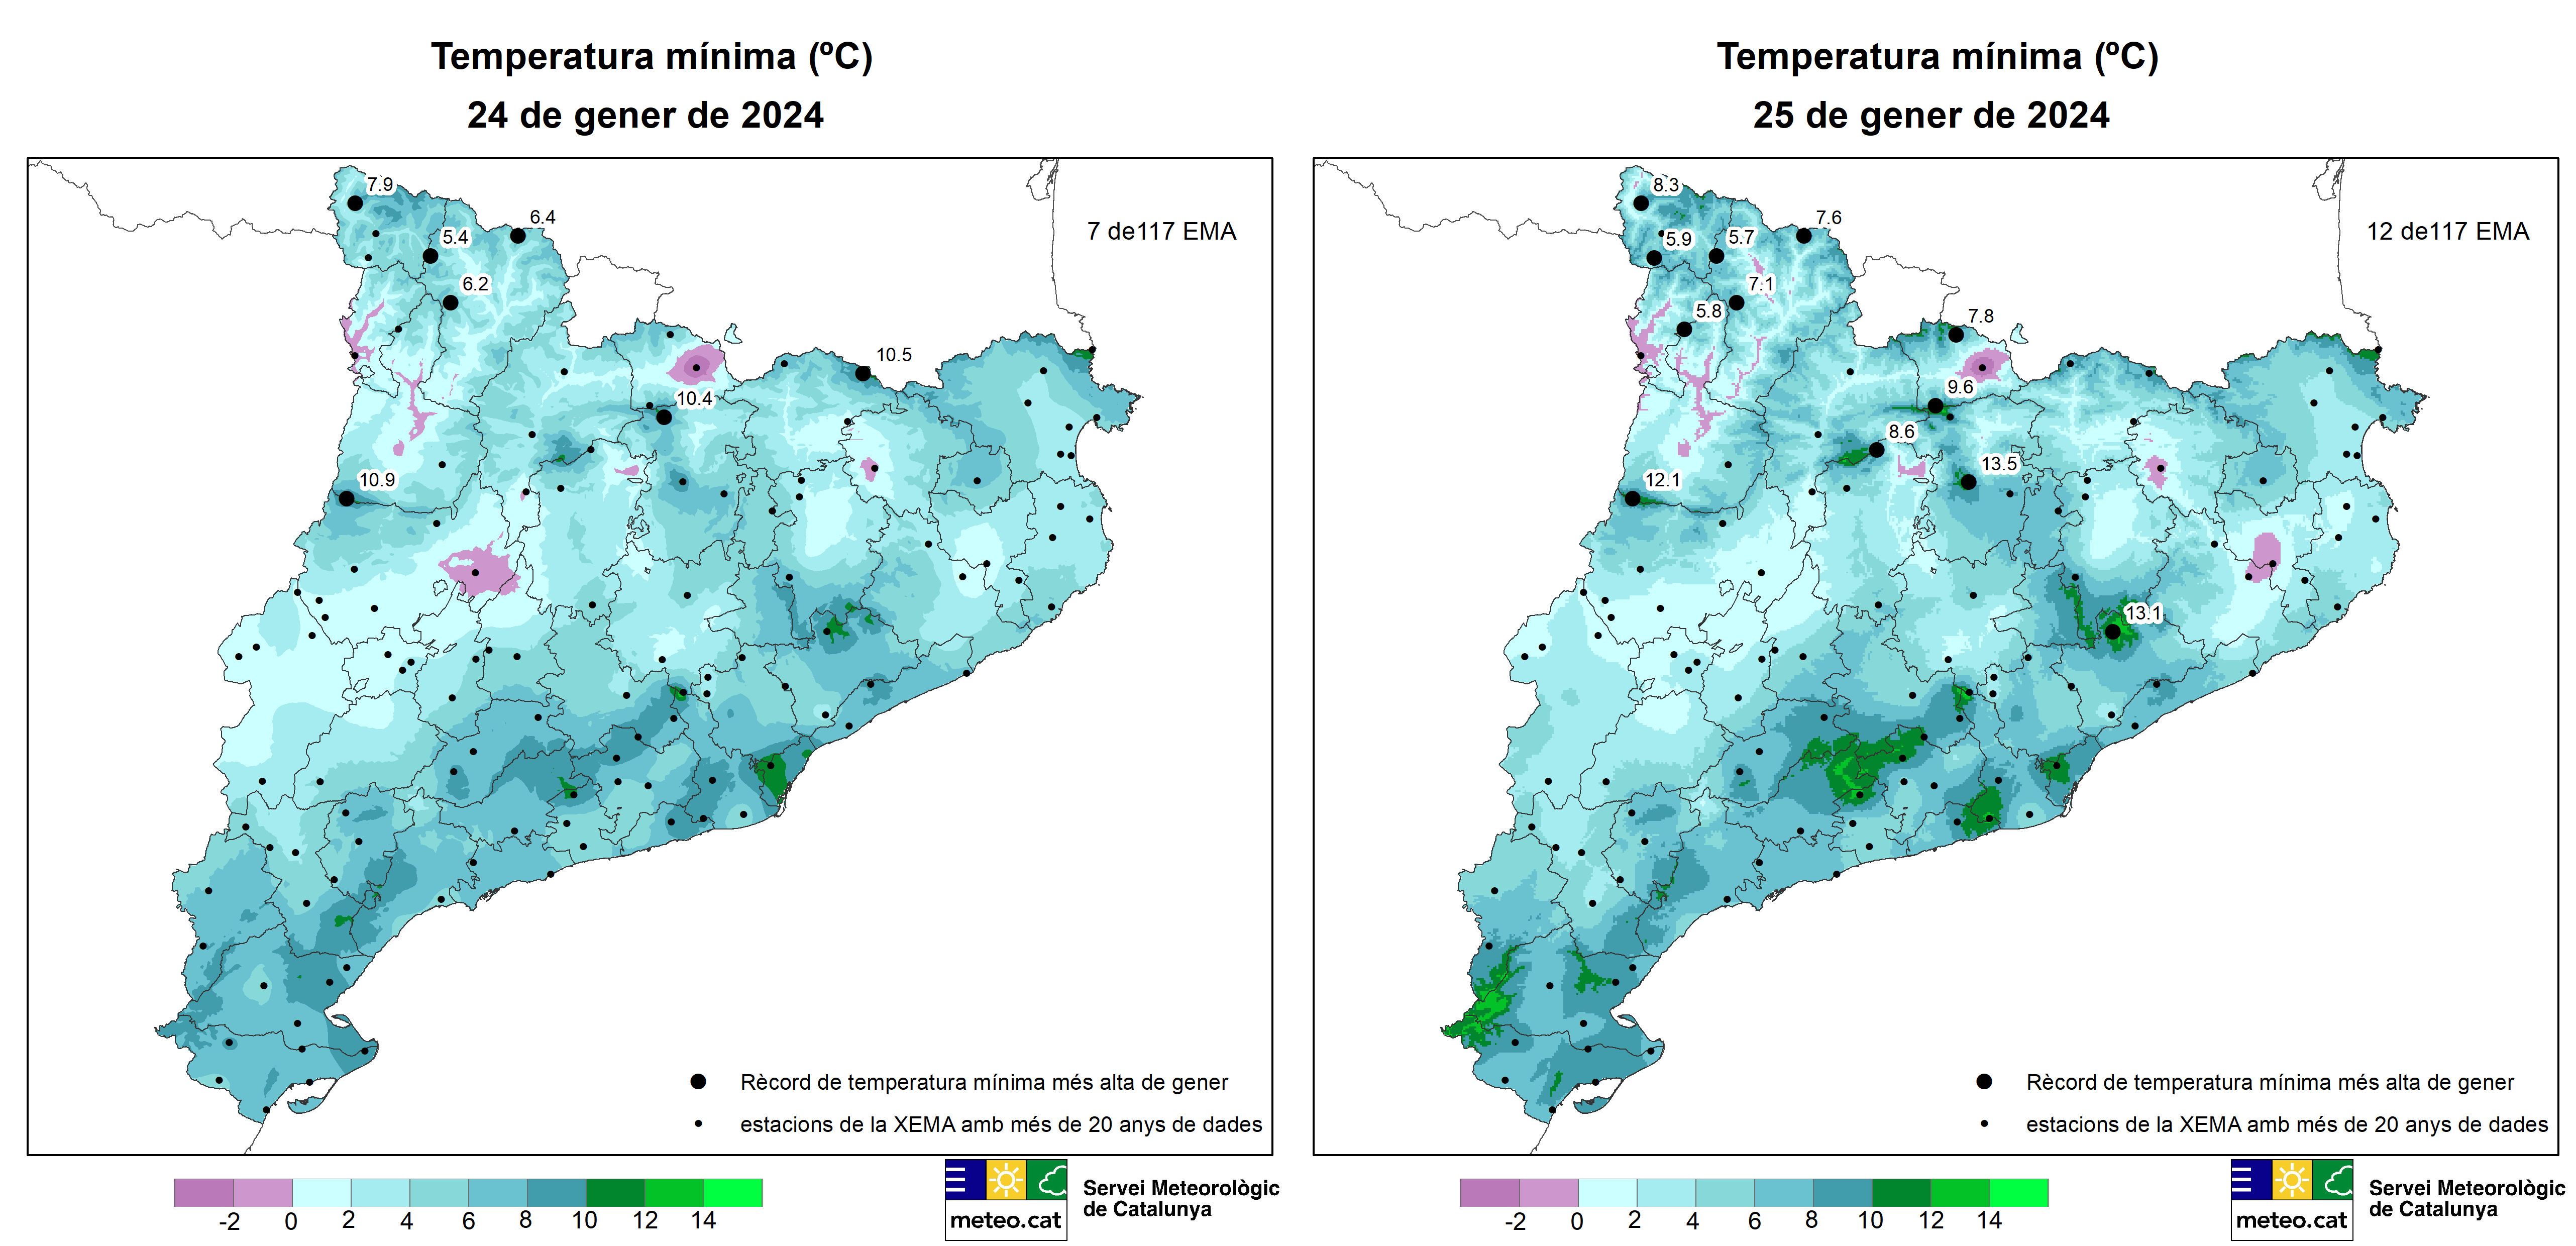 Mapes de distribució de la temperatura mínima i els rècords dels dies 24 i 25 de gener